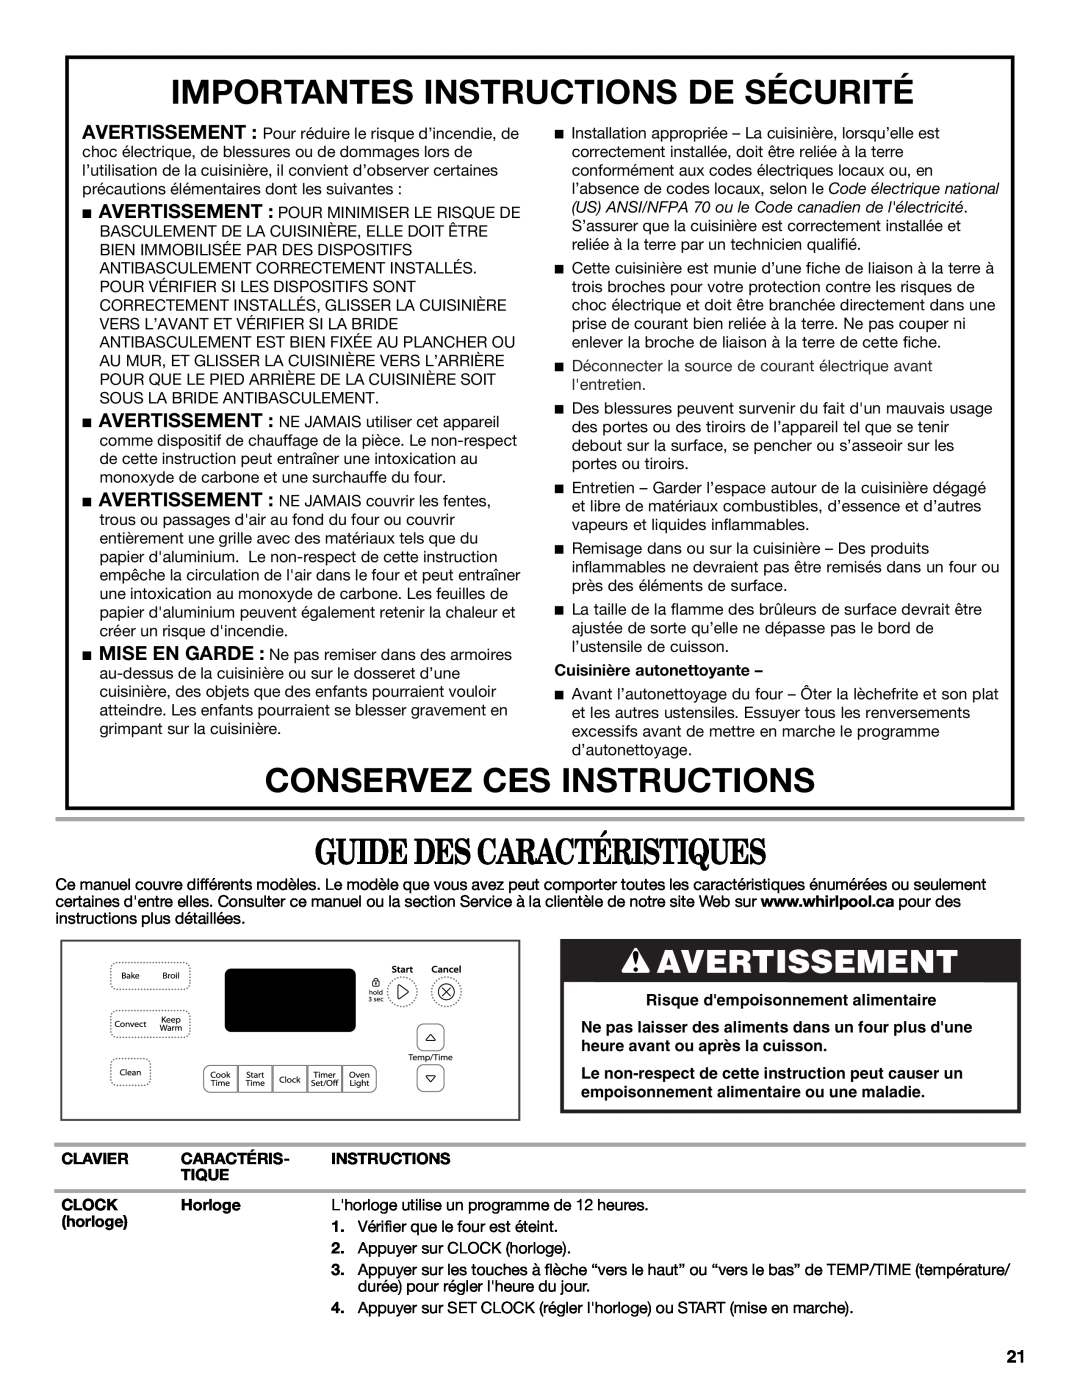 Whirlpool WFG540H0AB manual Guide Des Caractéristiques, Importantes Instructions De Sécurité, Conservez Ces Instructions 